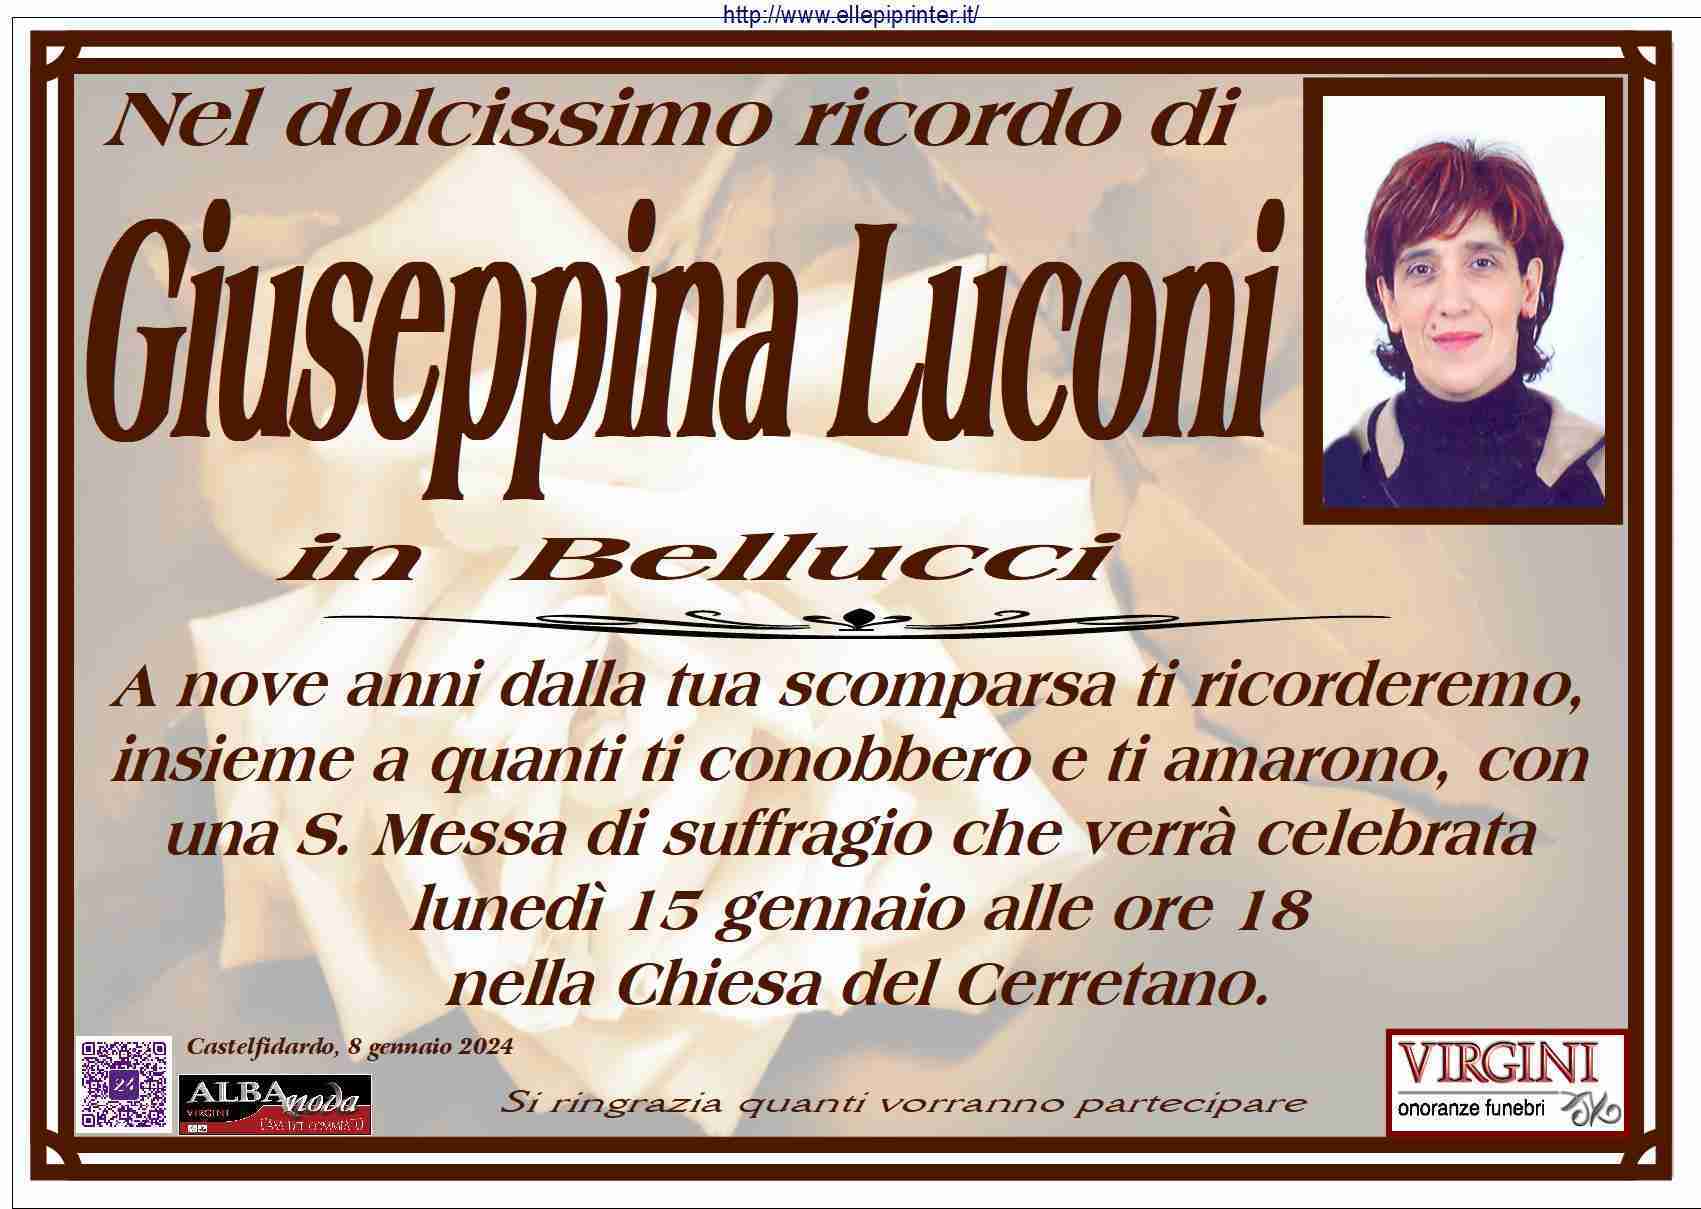 Giuseppina Luconi